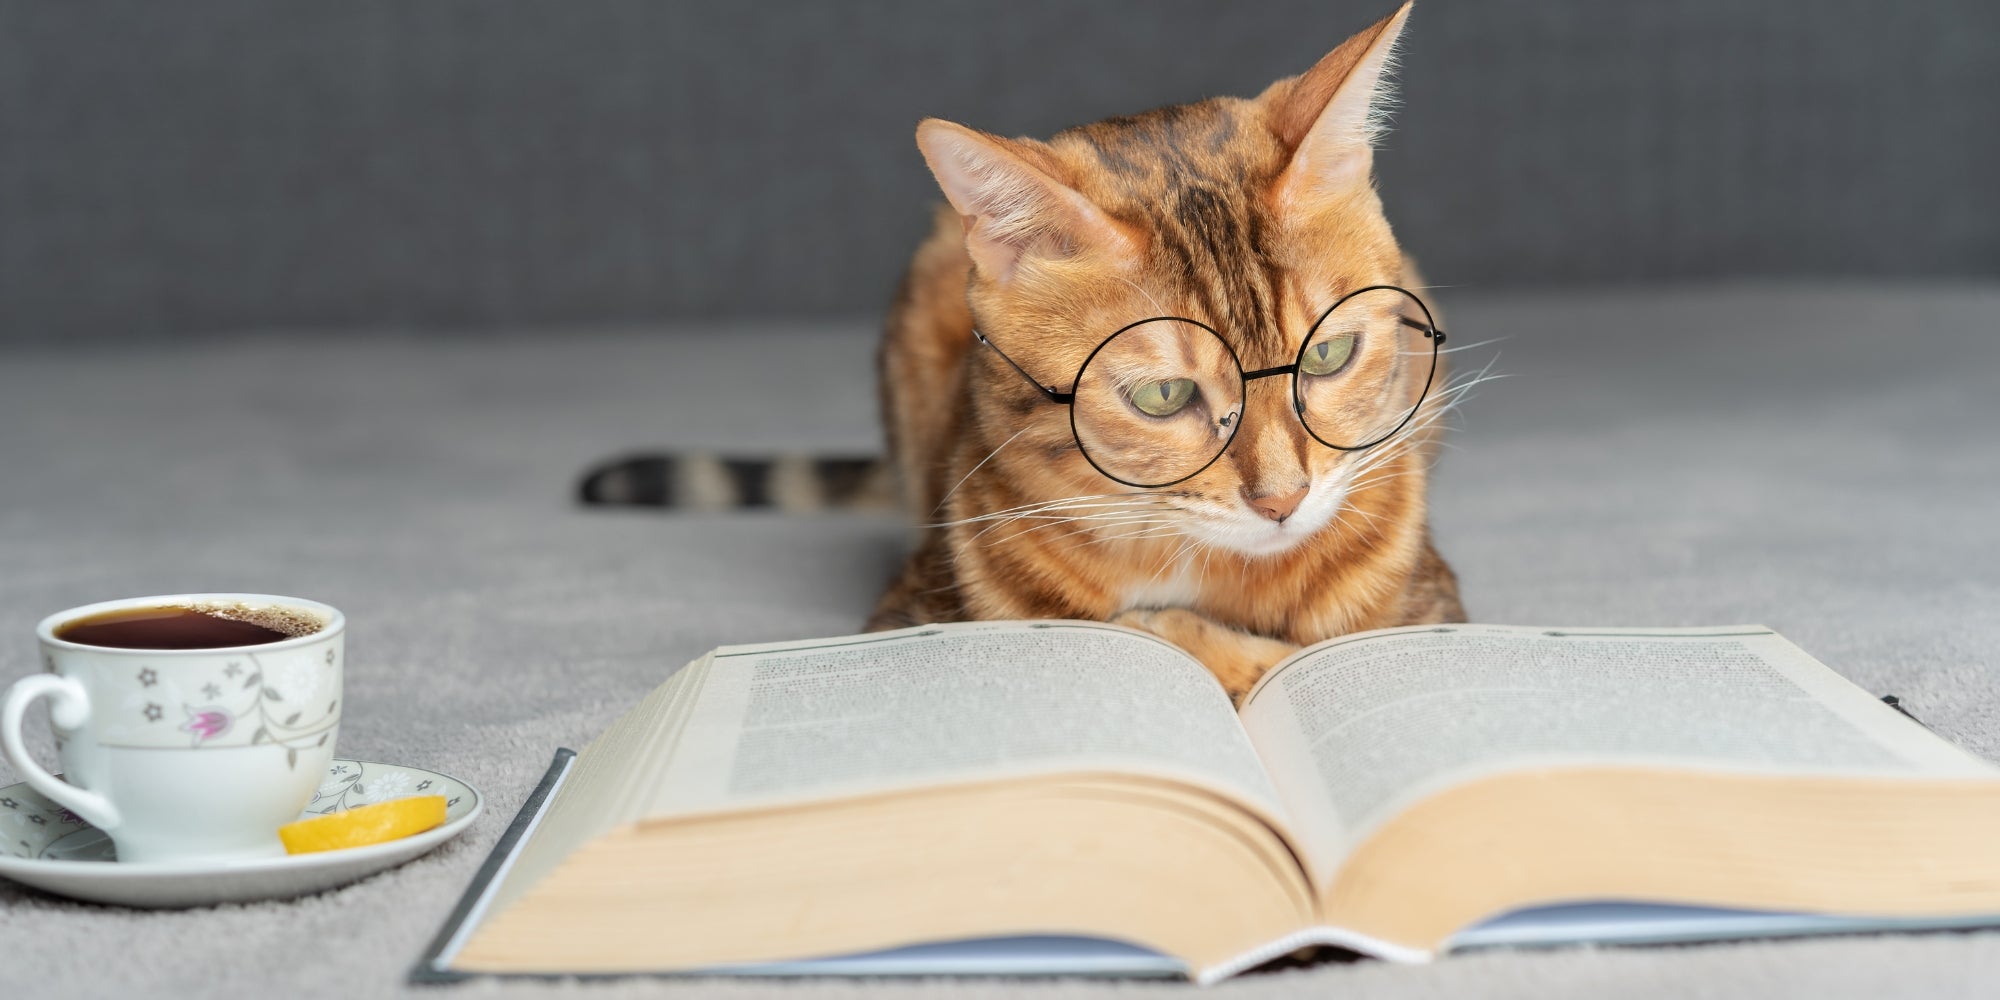 Gato doméstico con gafas lee un libro.